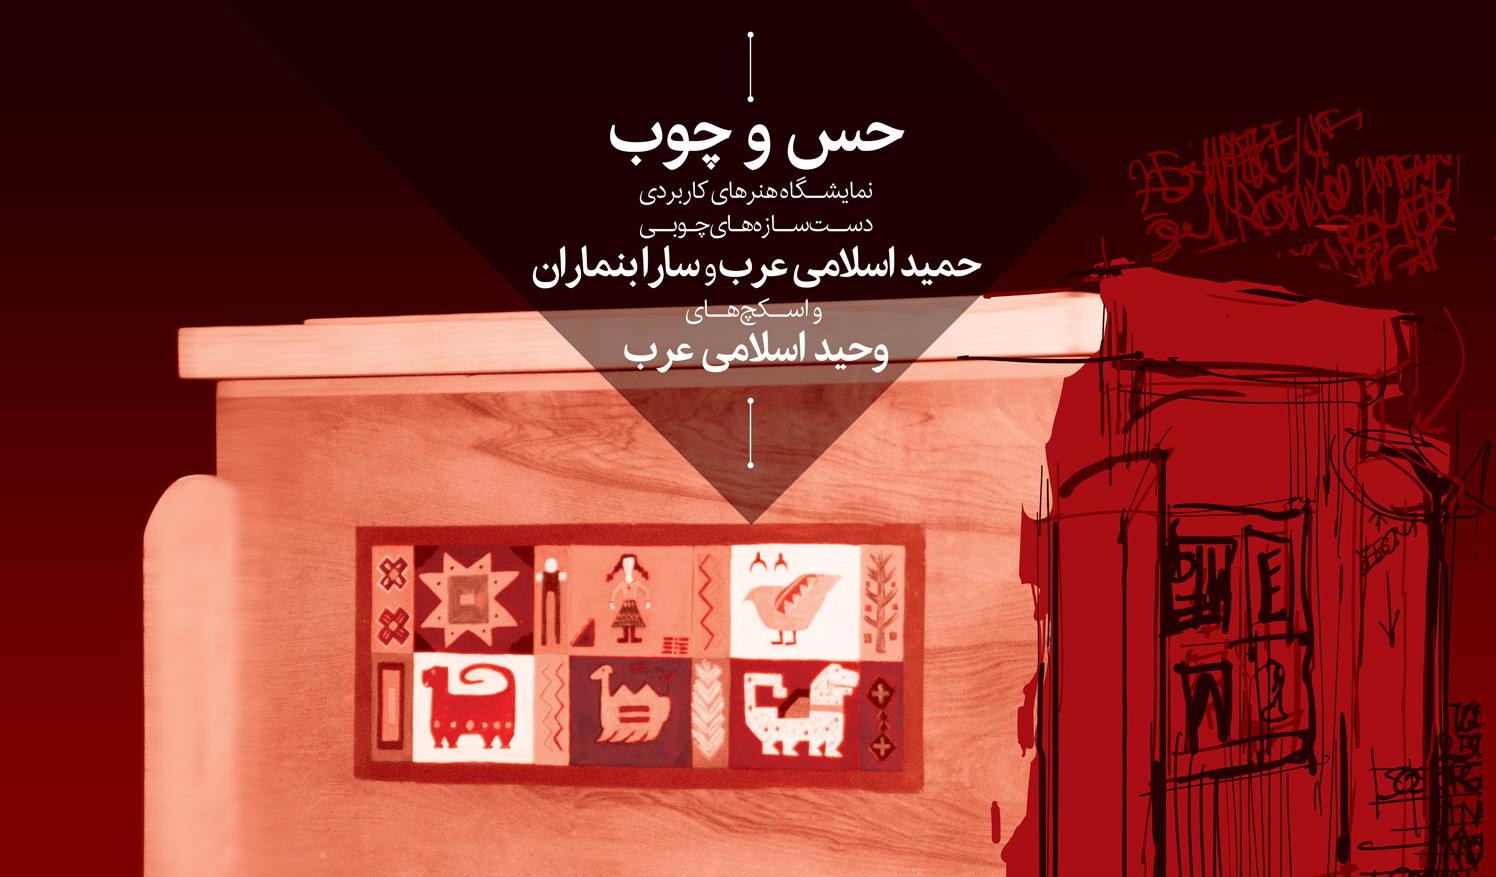 نمایشگاه هنرهای کاربردی , حمید اسلامی عرب , سارا بنماران , وحید اسلامی عرب , گالری هپتا